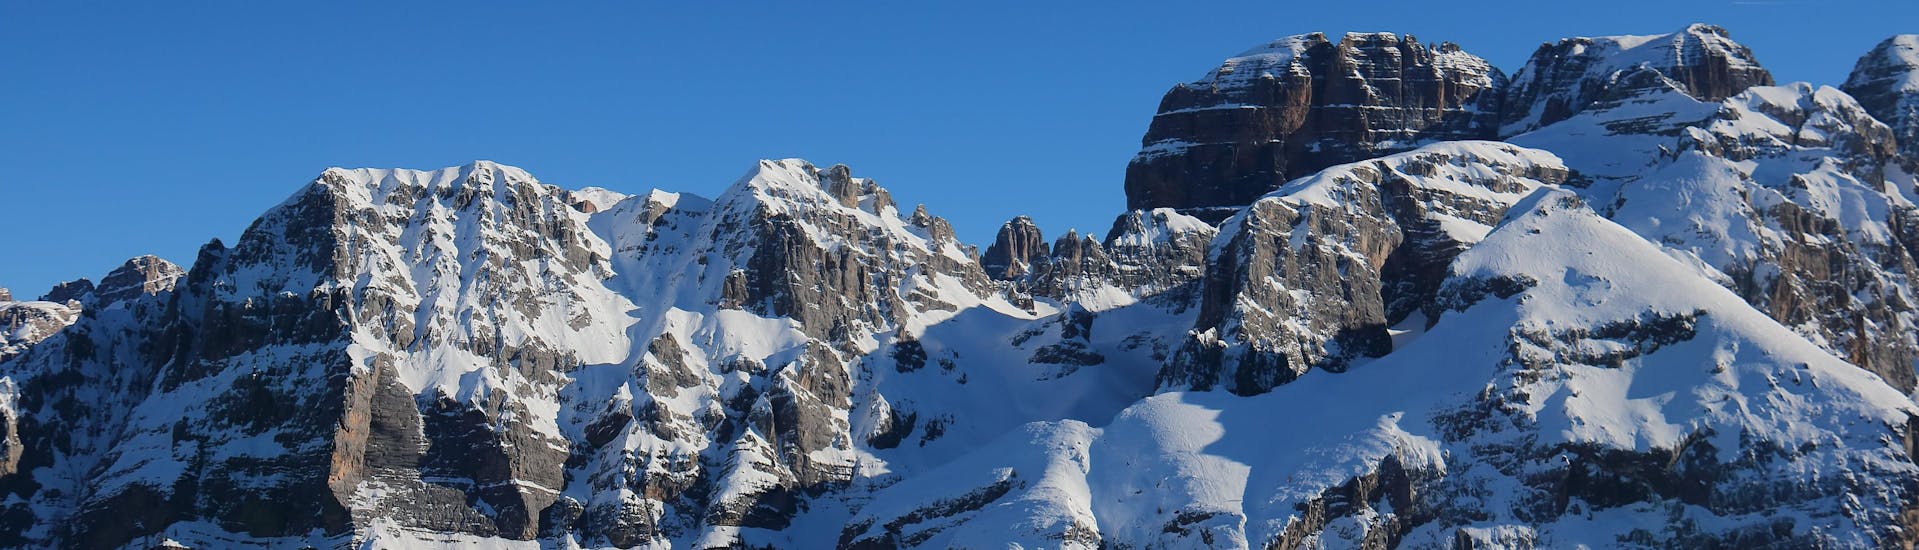 Vista del paesaggio alpino della stazione sciistica di Pinzolo in Val Rendena, dove le scuole di sci locali offrono le loro lezioni di sci.